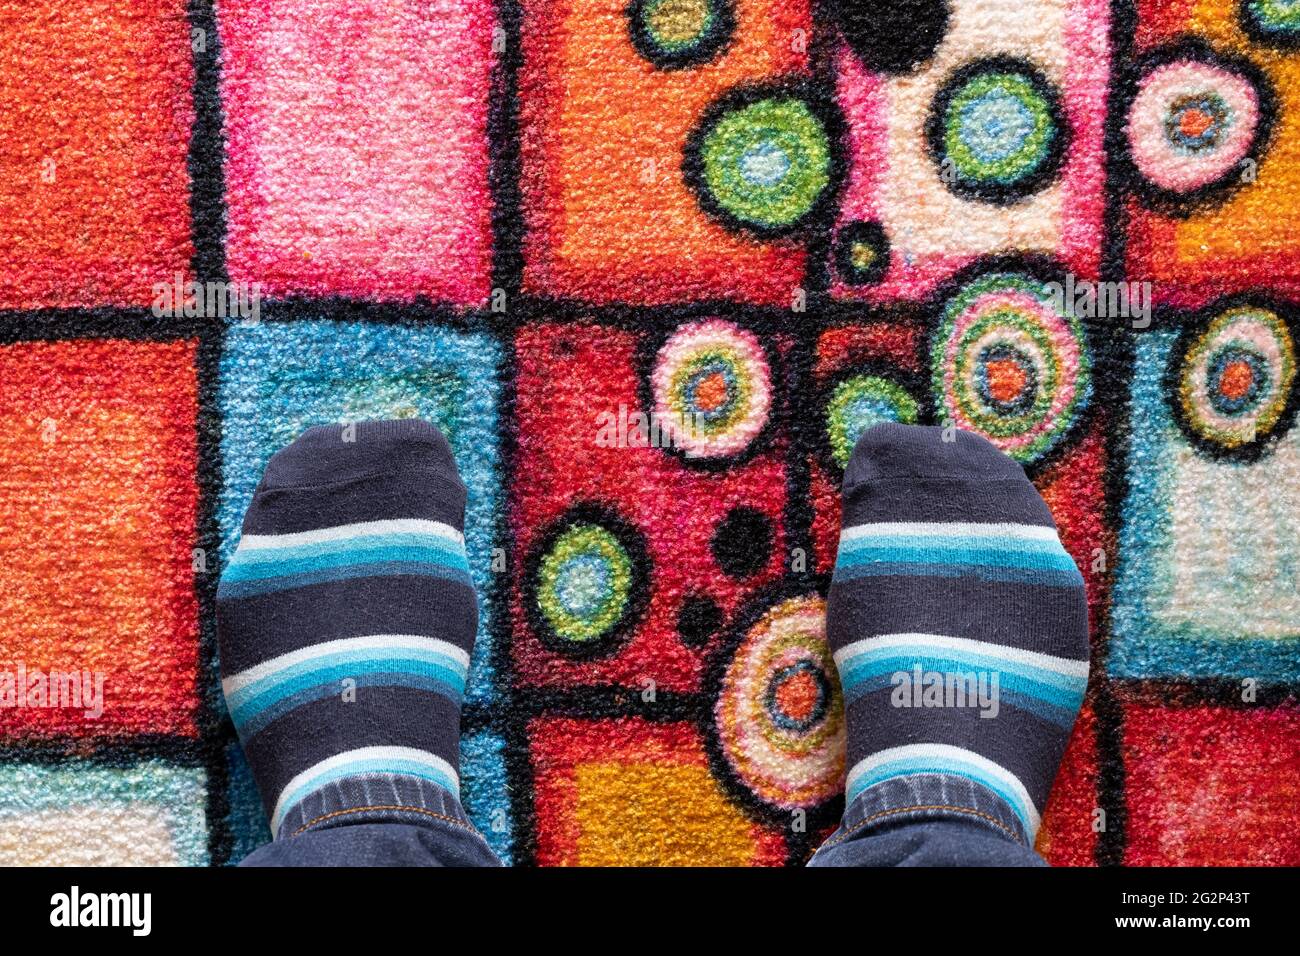 Füße eines Mannes in Socken am Rand eines bunt gemusterten Teppichs mit Platz für Kopien. Thema: Am Rande, ein neues Abenteuer, geerdet in der Realität Stockfoto